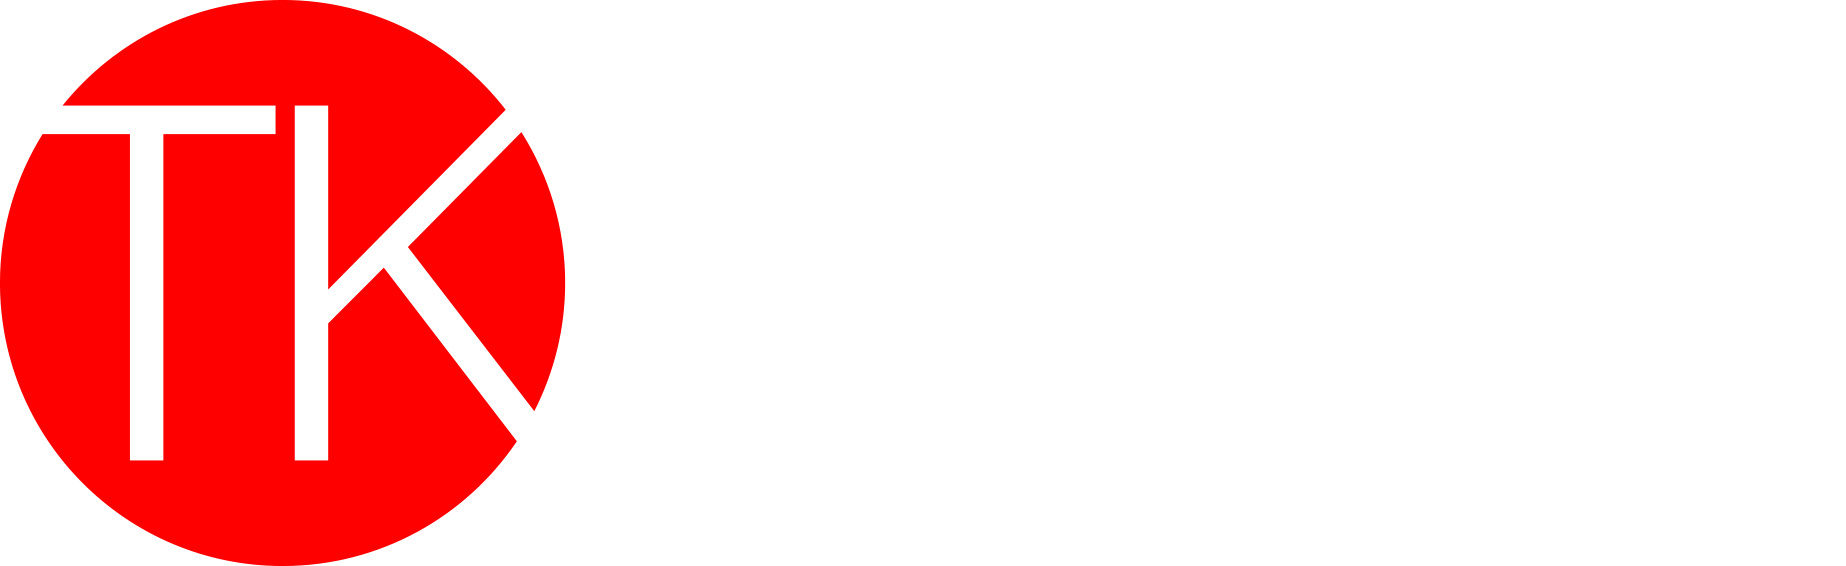 Logo-Tkvideo-2